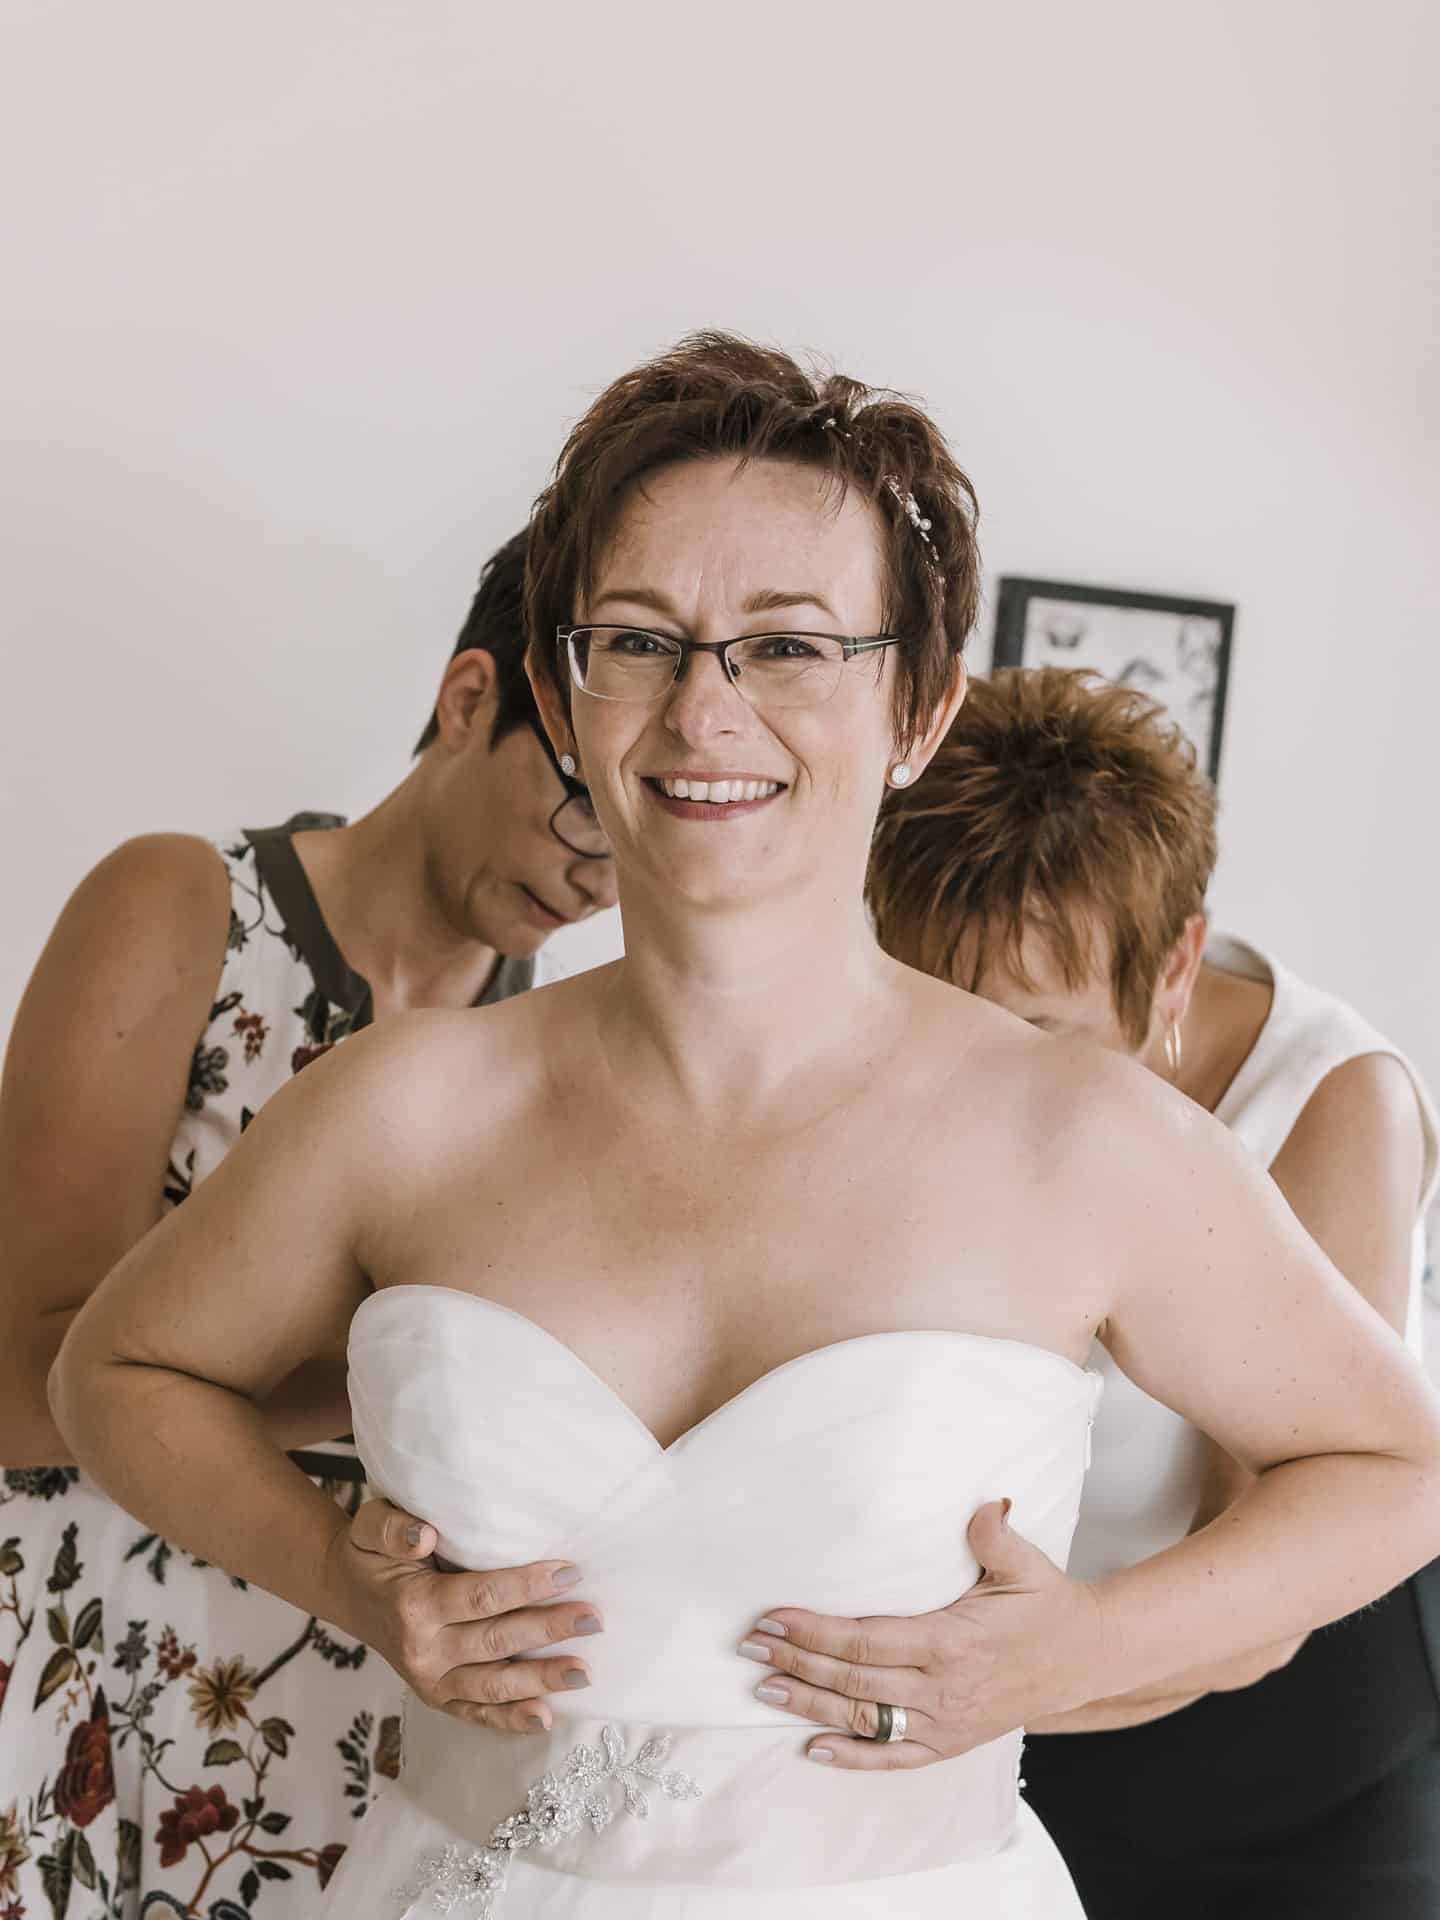 Eine Frau hilft einer anderen Frau, ihr Hochzeitskleid anzuziehen.